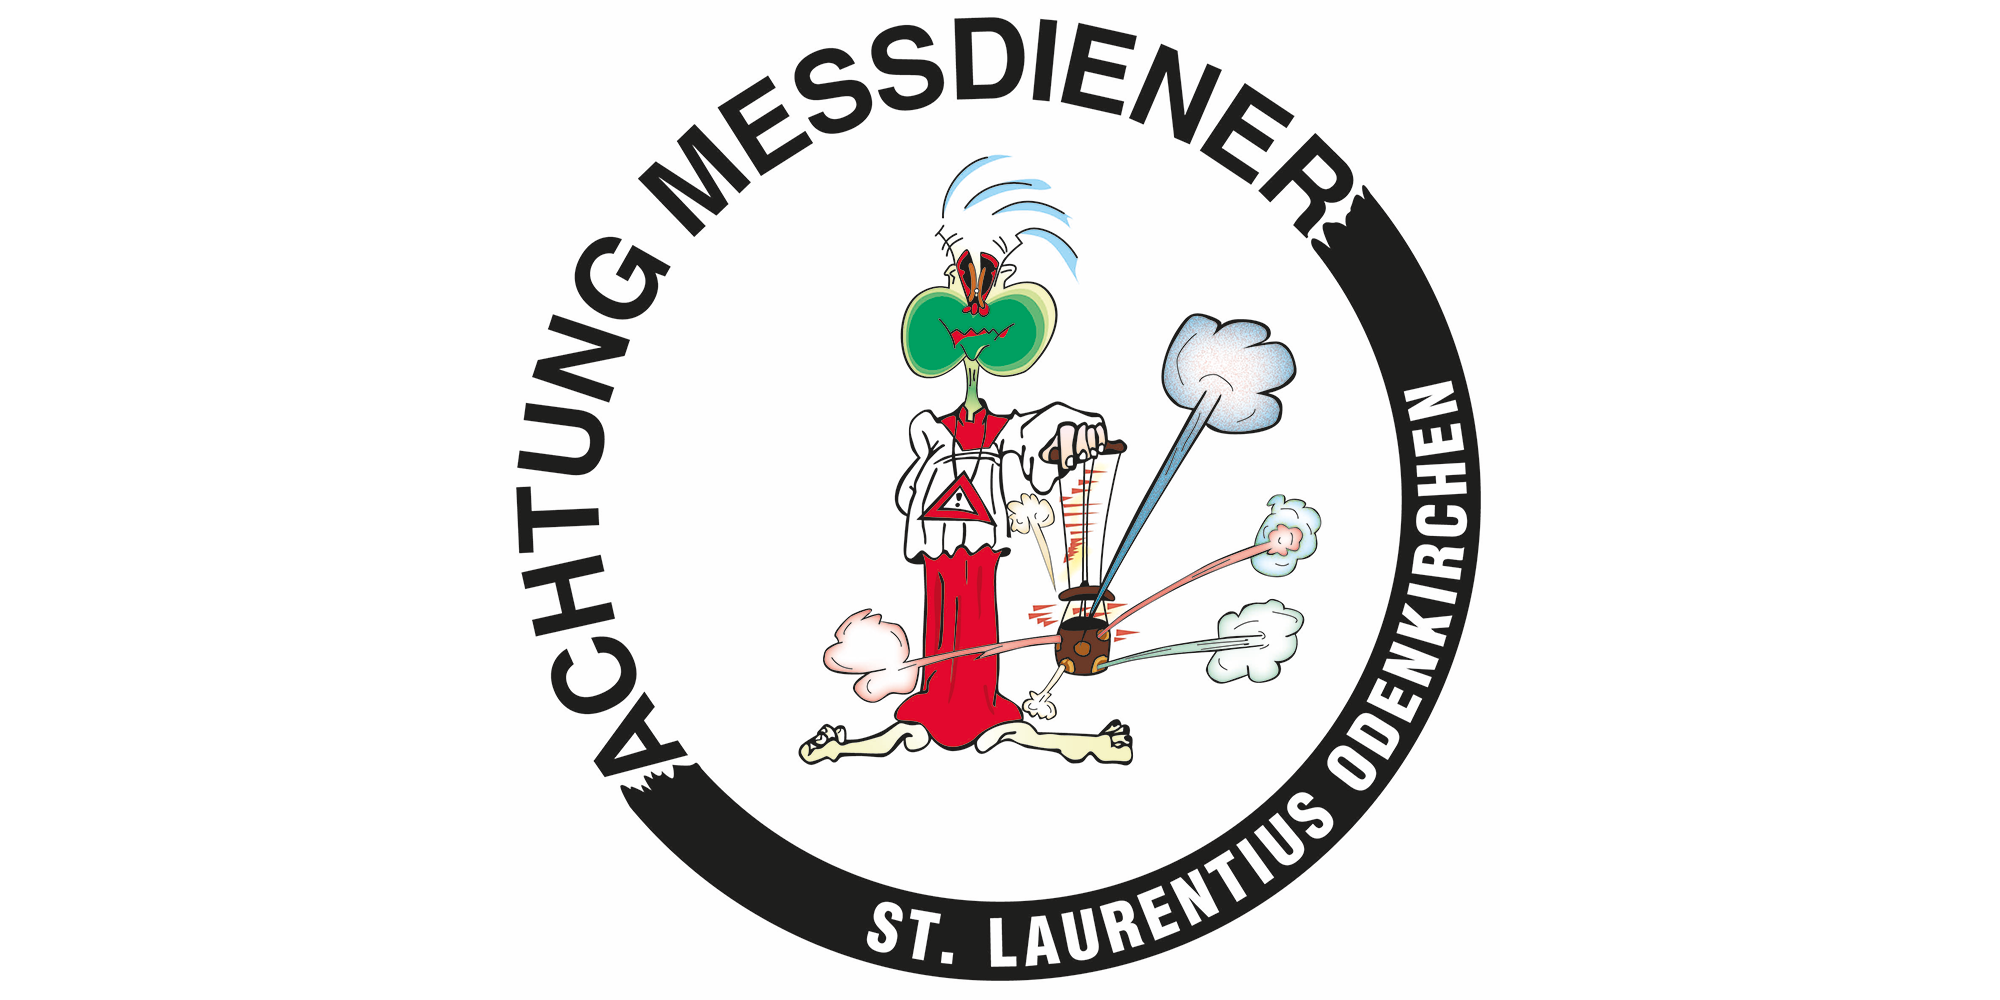 Logo Messdiener St. Laurentius Teaser (c) Messdiener St. Laurentius